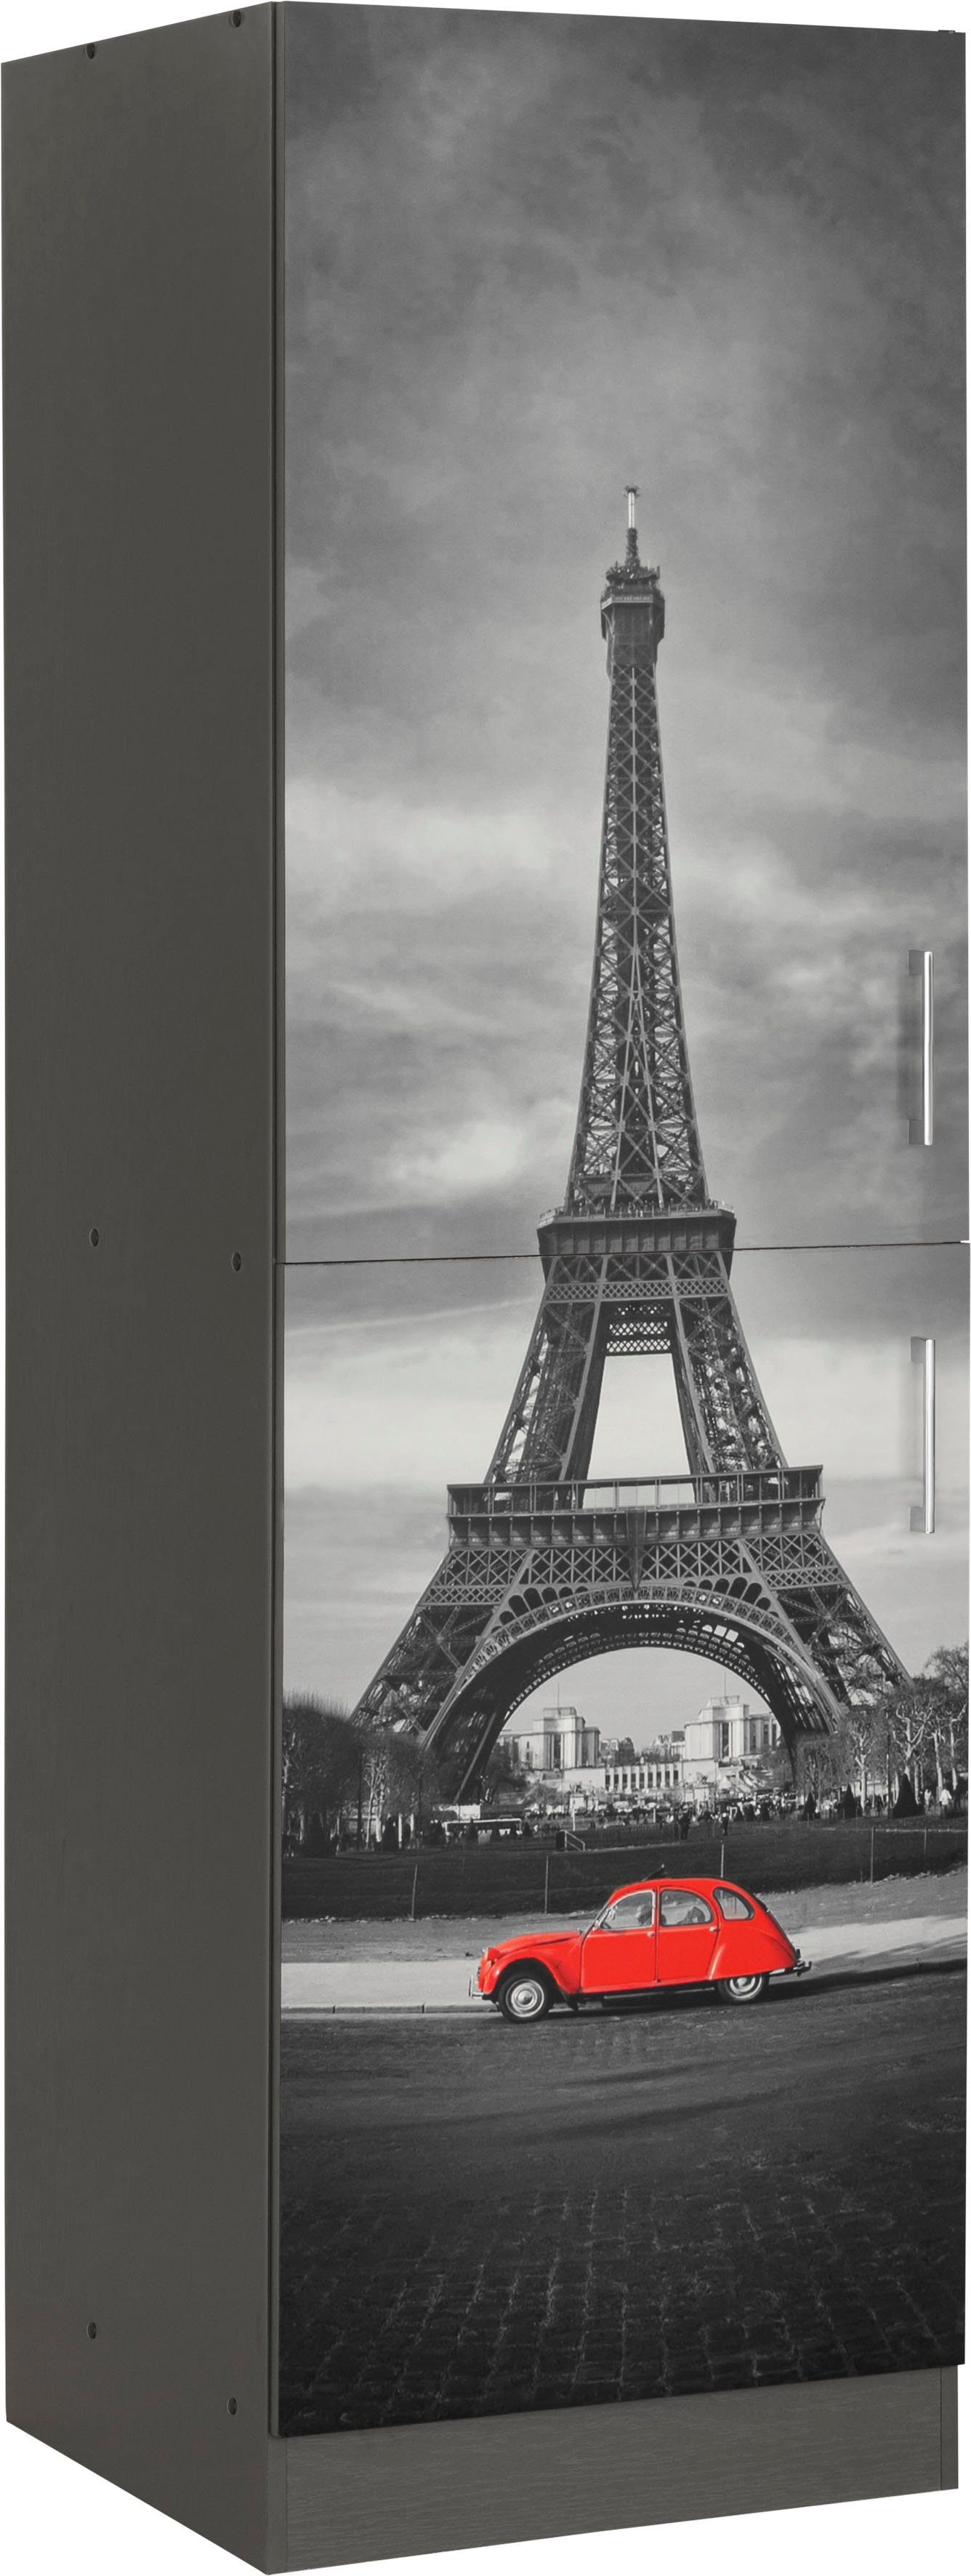 HELD MÖBEL Vorratsschrank Paris viel breit, 200 mit Digitaldruck hochwertigem 60 hoch, cm Stauraum, cm